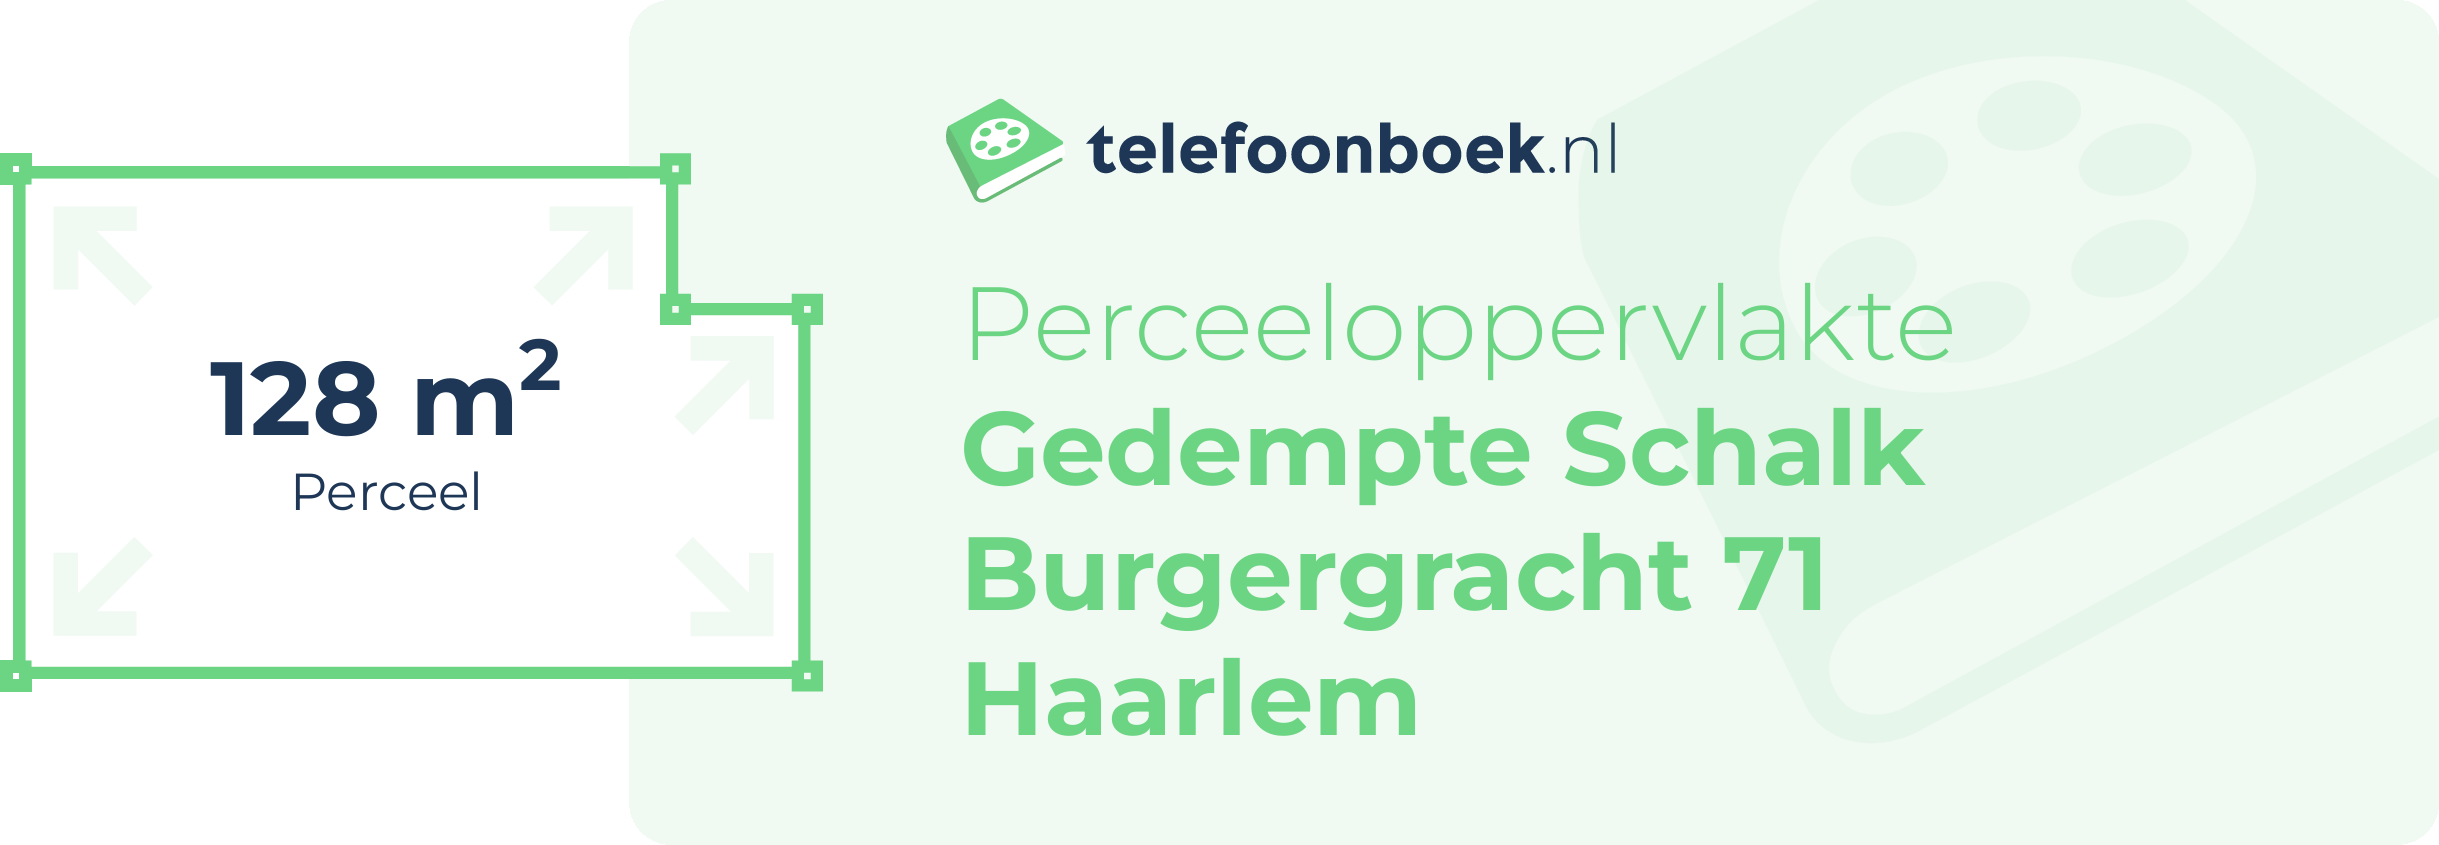 Perceeloppervlakte Gedempte Schalk Burgergracht 71 Haarlem